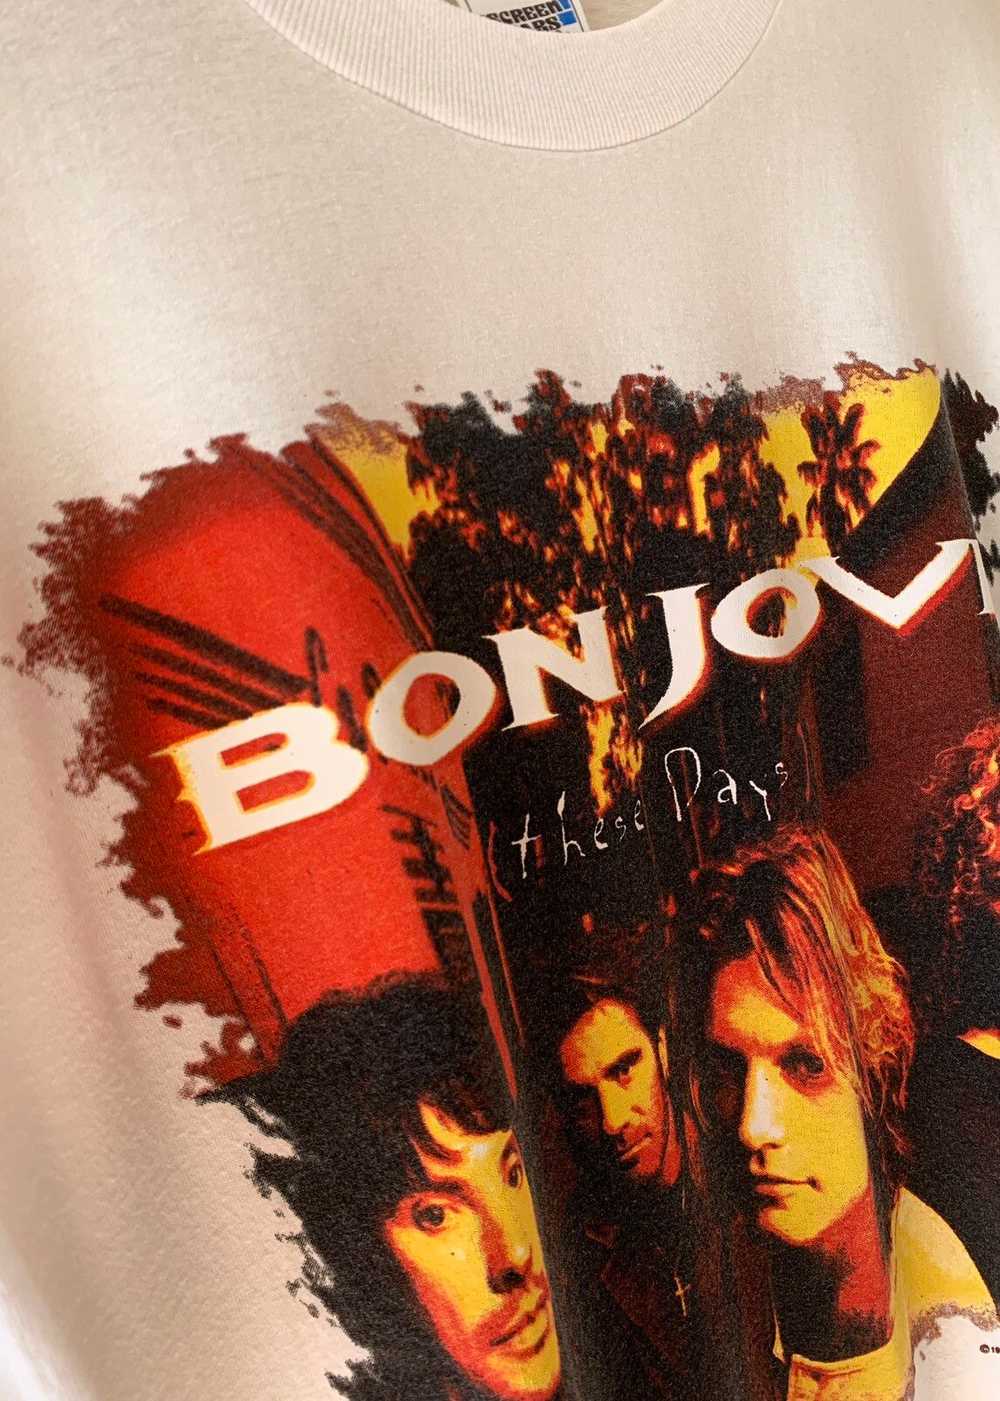 Bon Jovi © 1996 BON JOVI “These Days” T-Shirt - image 3